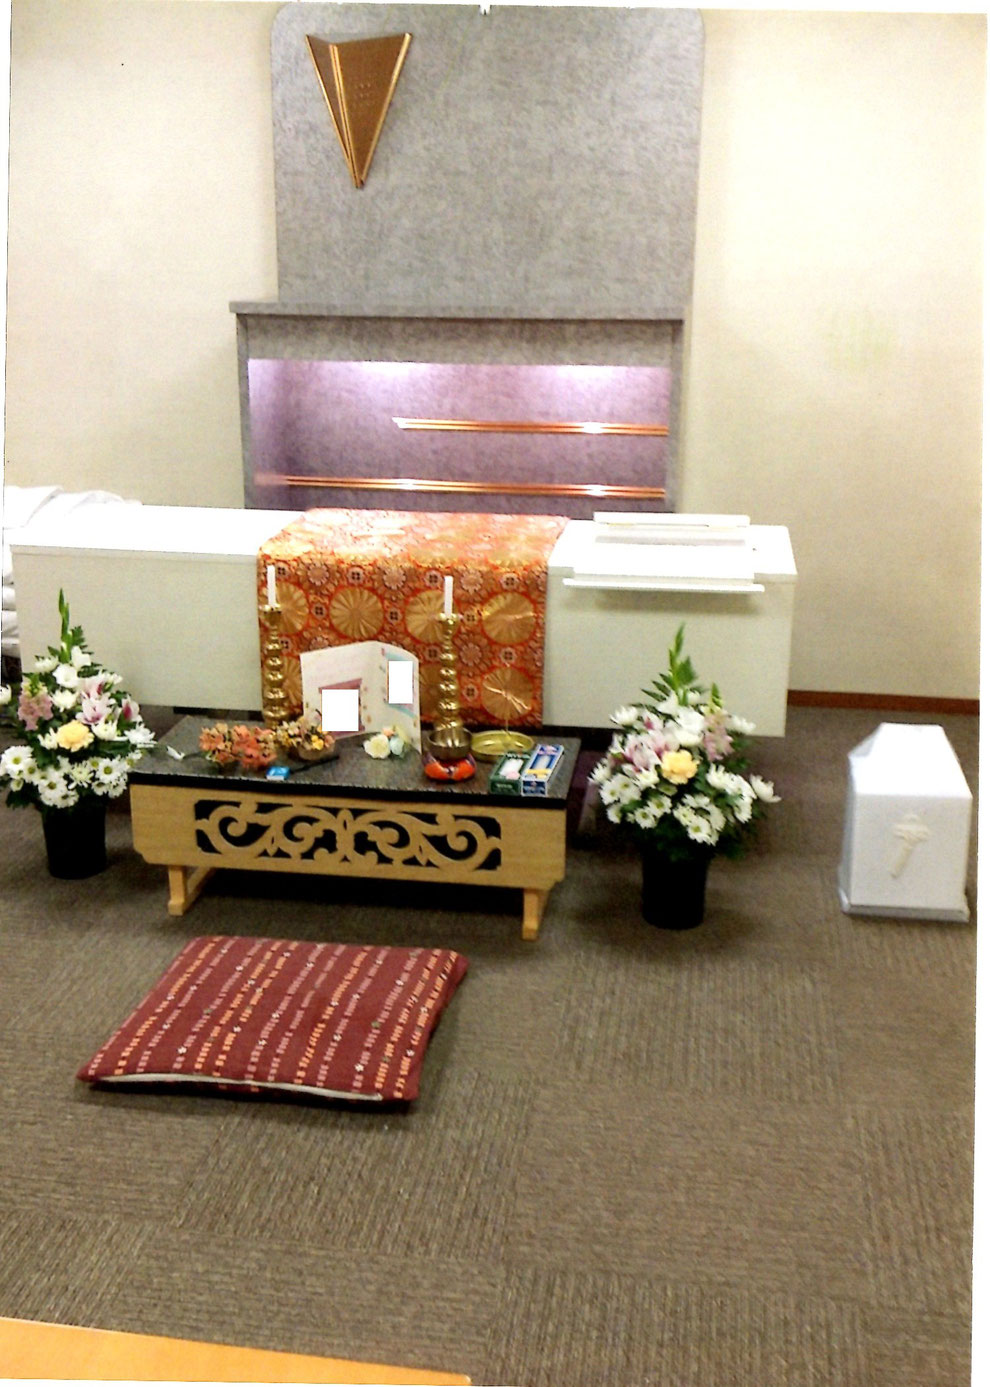 札幌家族葬メモリーズてんそう 葬儀・家族葬103,400円プラン